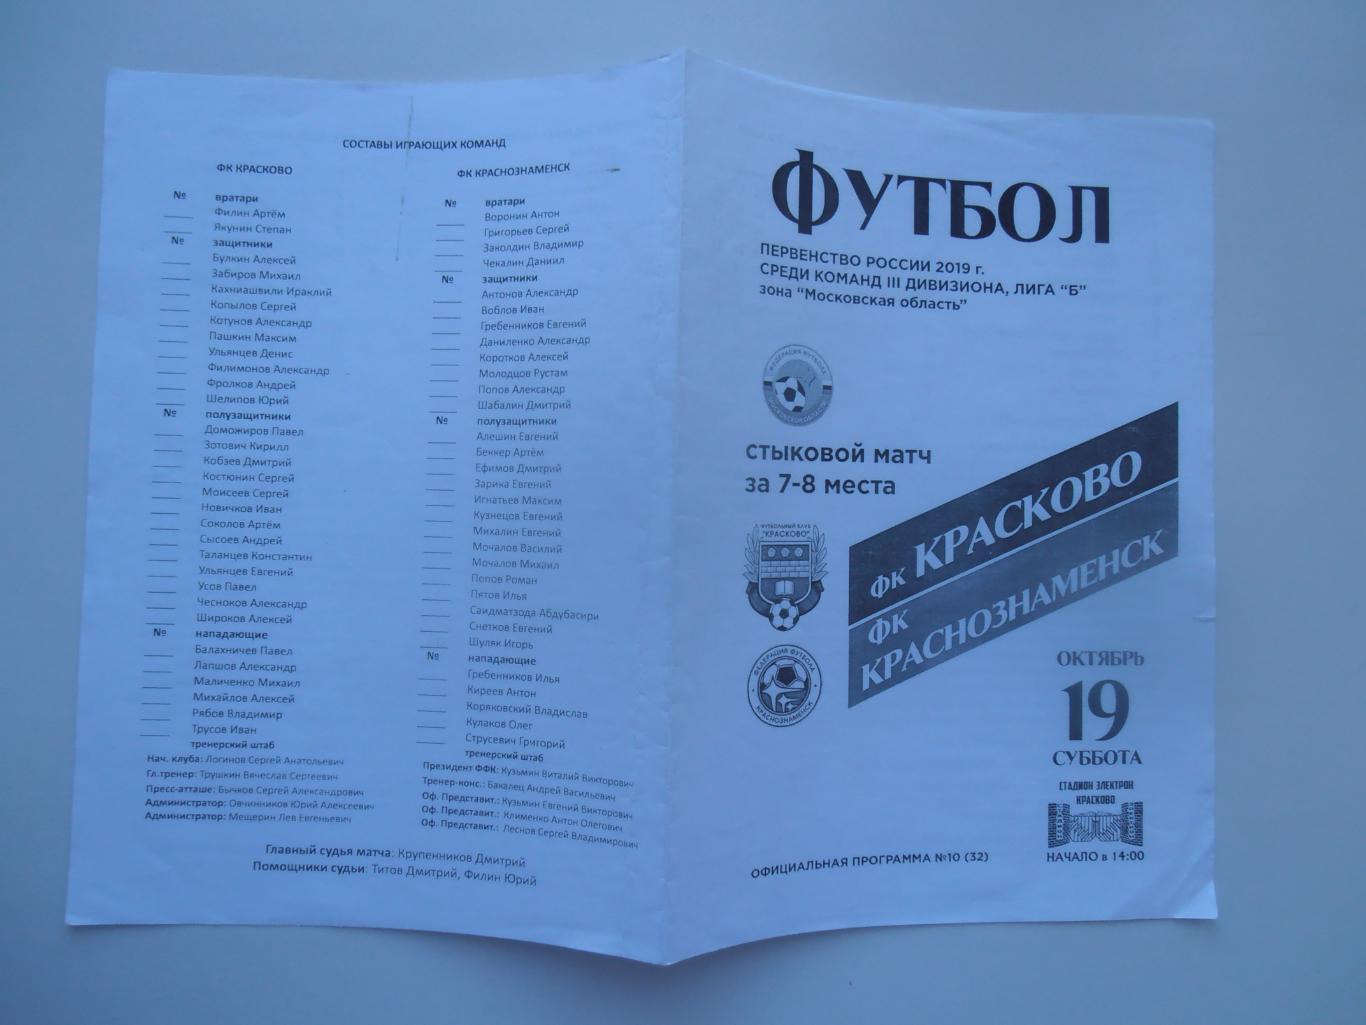 Красково-Краснознаменск 19 октября 2019 стыковой матч